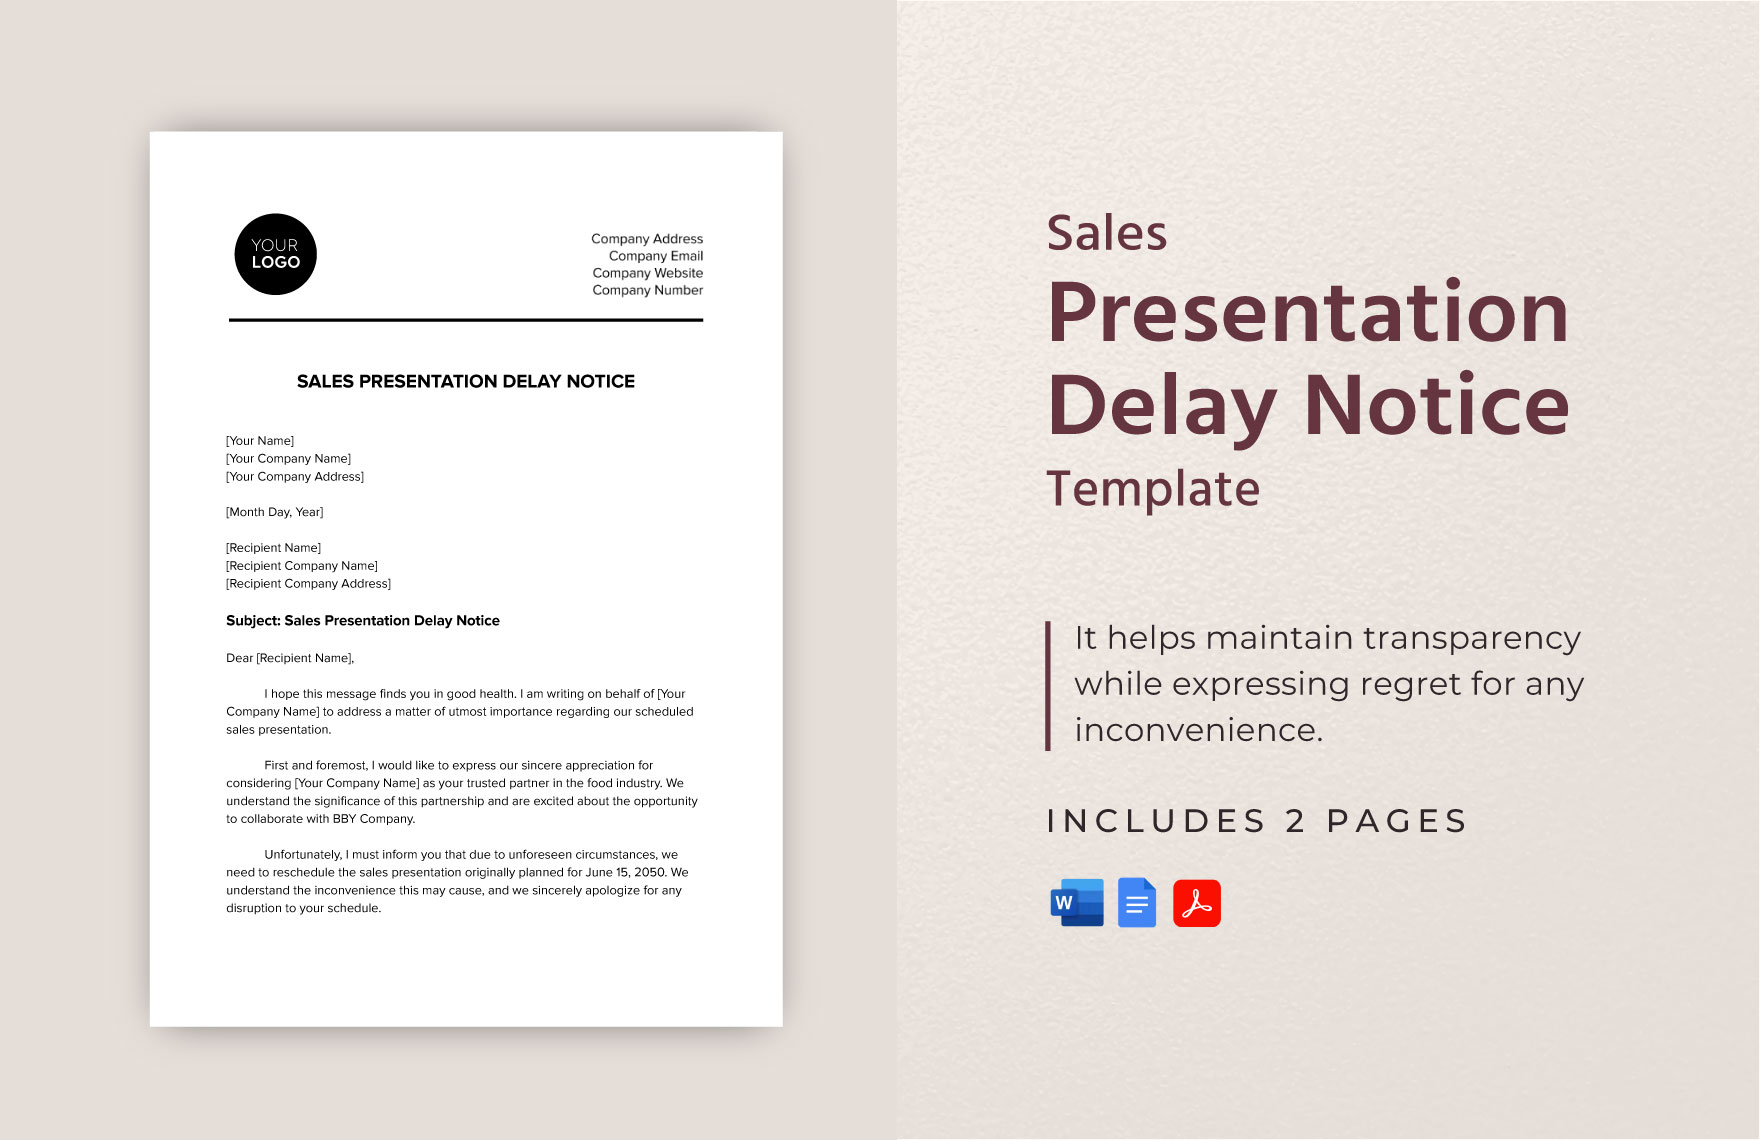 Sales Presentation Delay Notice Template in Word, Google Docs, PDF